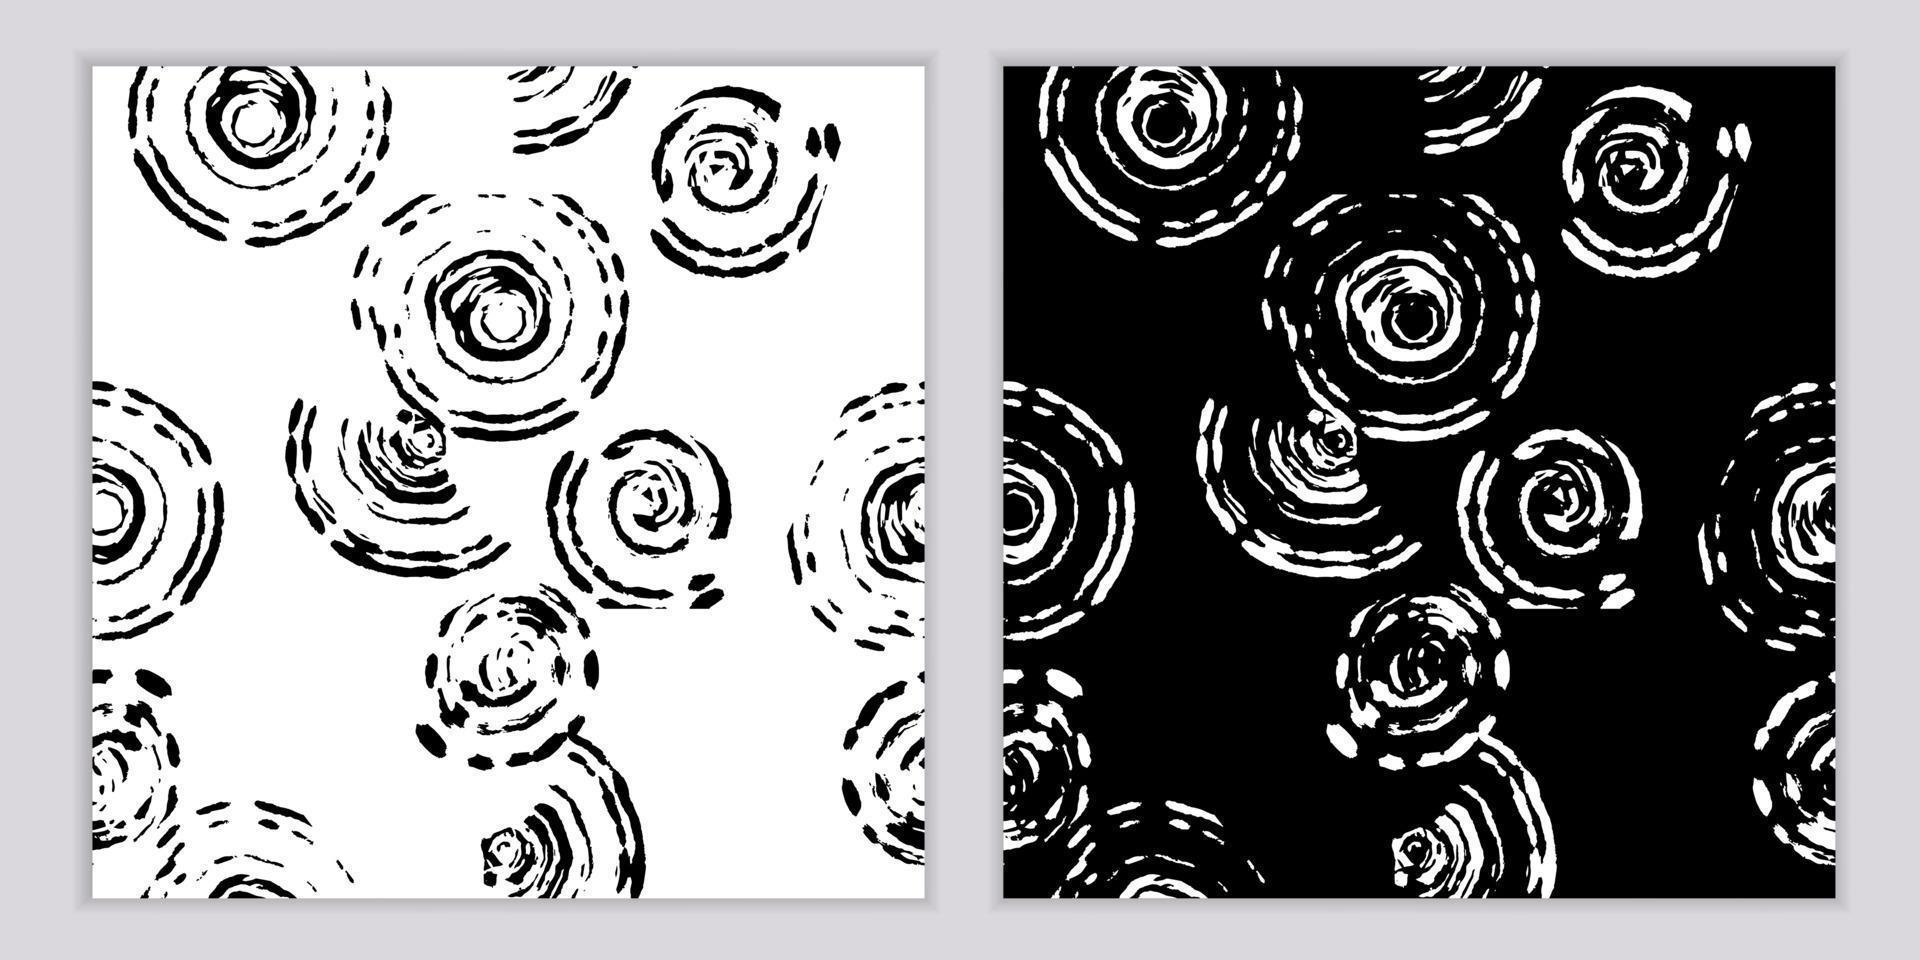 motifs harmonieux en noir et blanc d'éléments graphiques abstraits de points, rayures, taches et lignes. vecteur